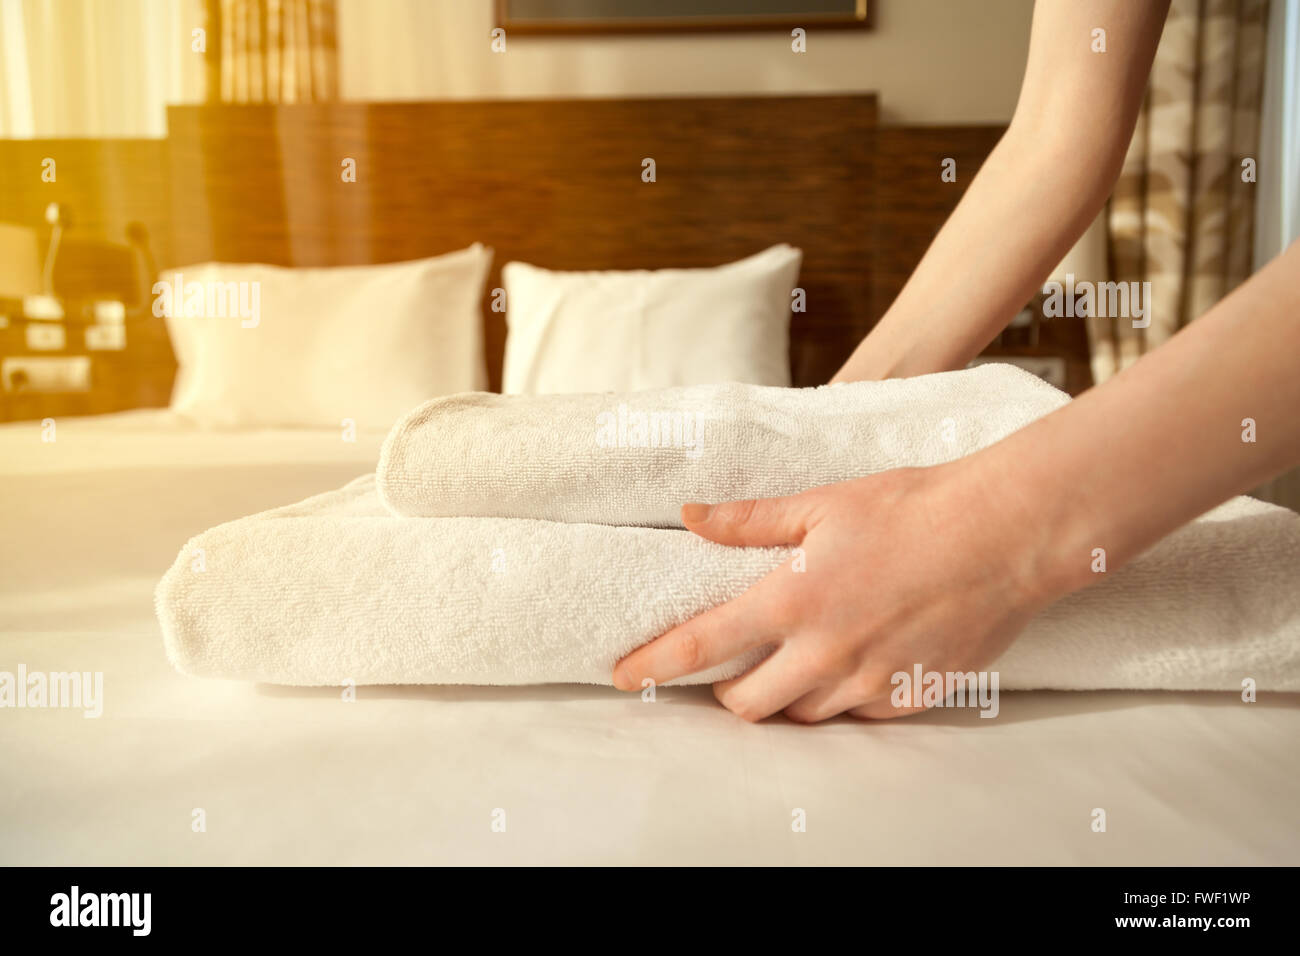 Close-up des mains mettre pile de serviettes de bain blanc frais sur le drap. Prix Femme de chambre de service. Flair de l'objectif Banque D'Images